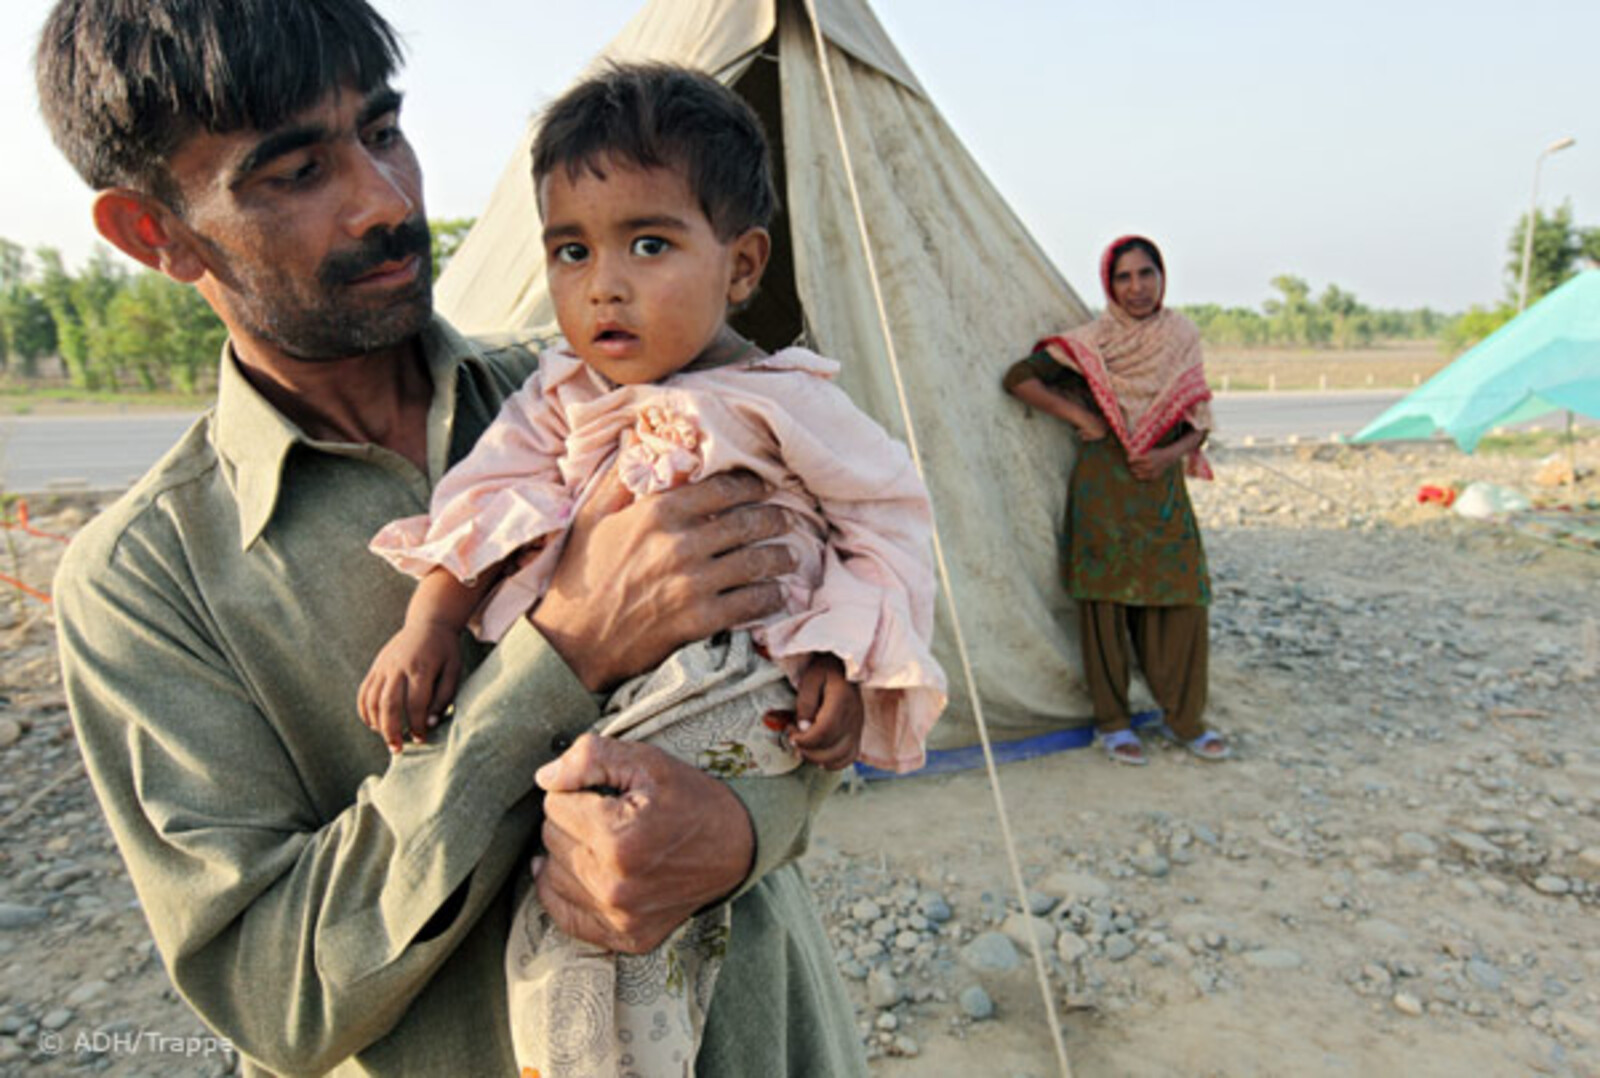 Flut Pakistan:27.08.2010, Pakistan, Nowshera - Hochwasser Pakistan. Auf der Autobahnstrecke Richtung Peshawar campieren Flüchtlinge des Hochwassers in Zelten.